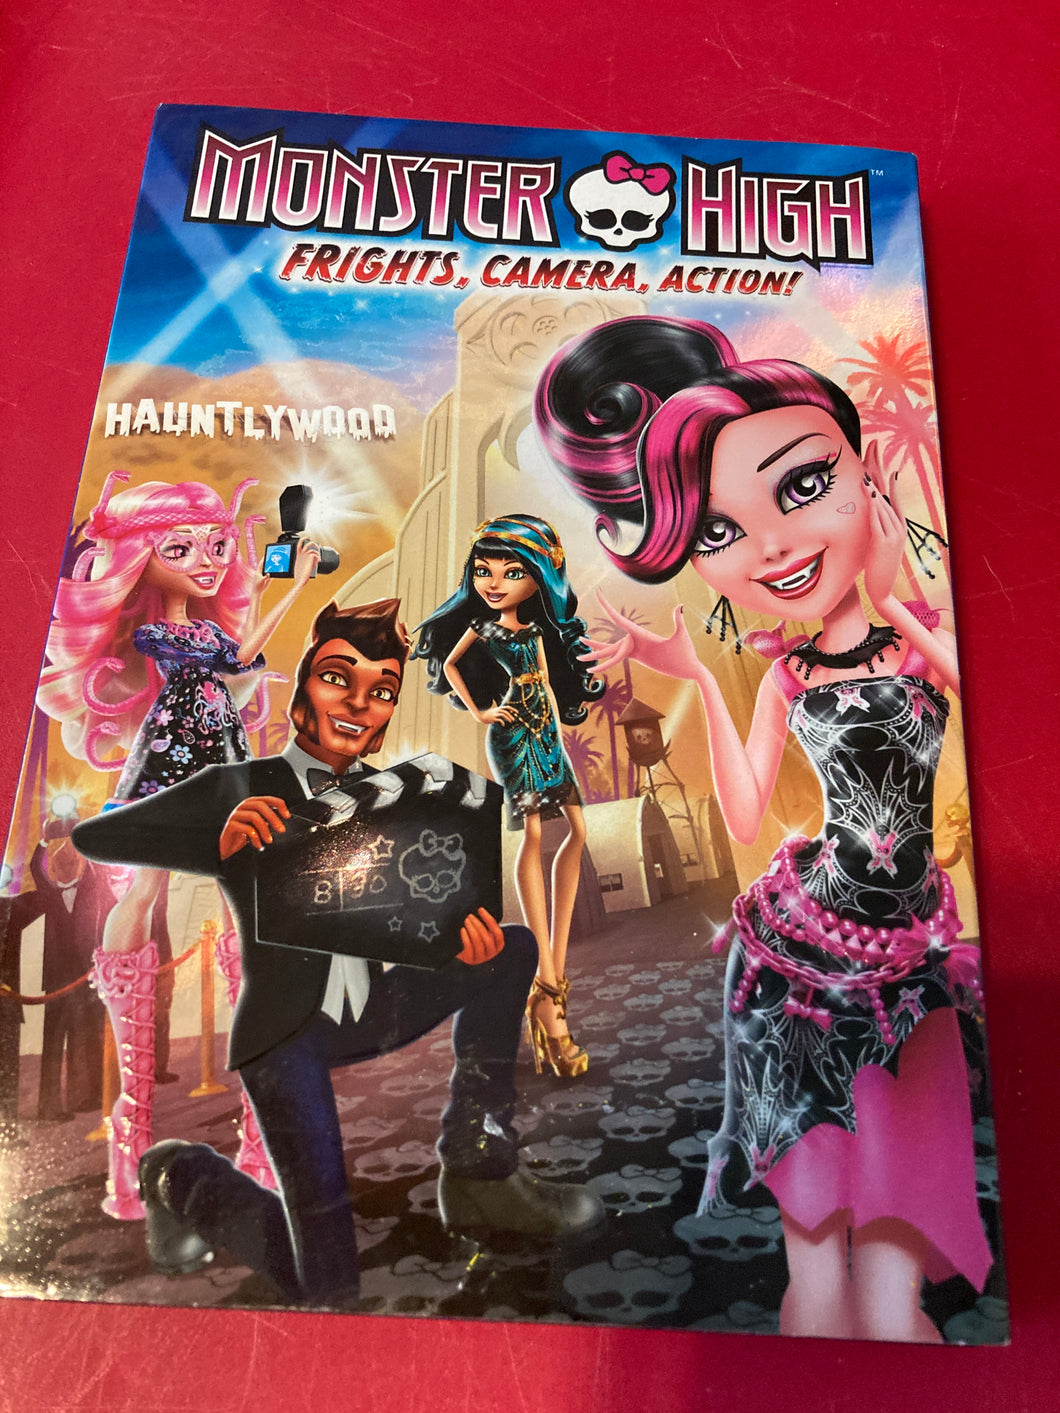 NEW Sealed. Monster high dvd